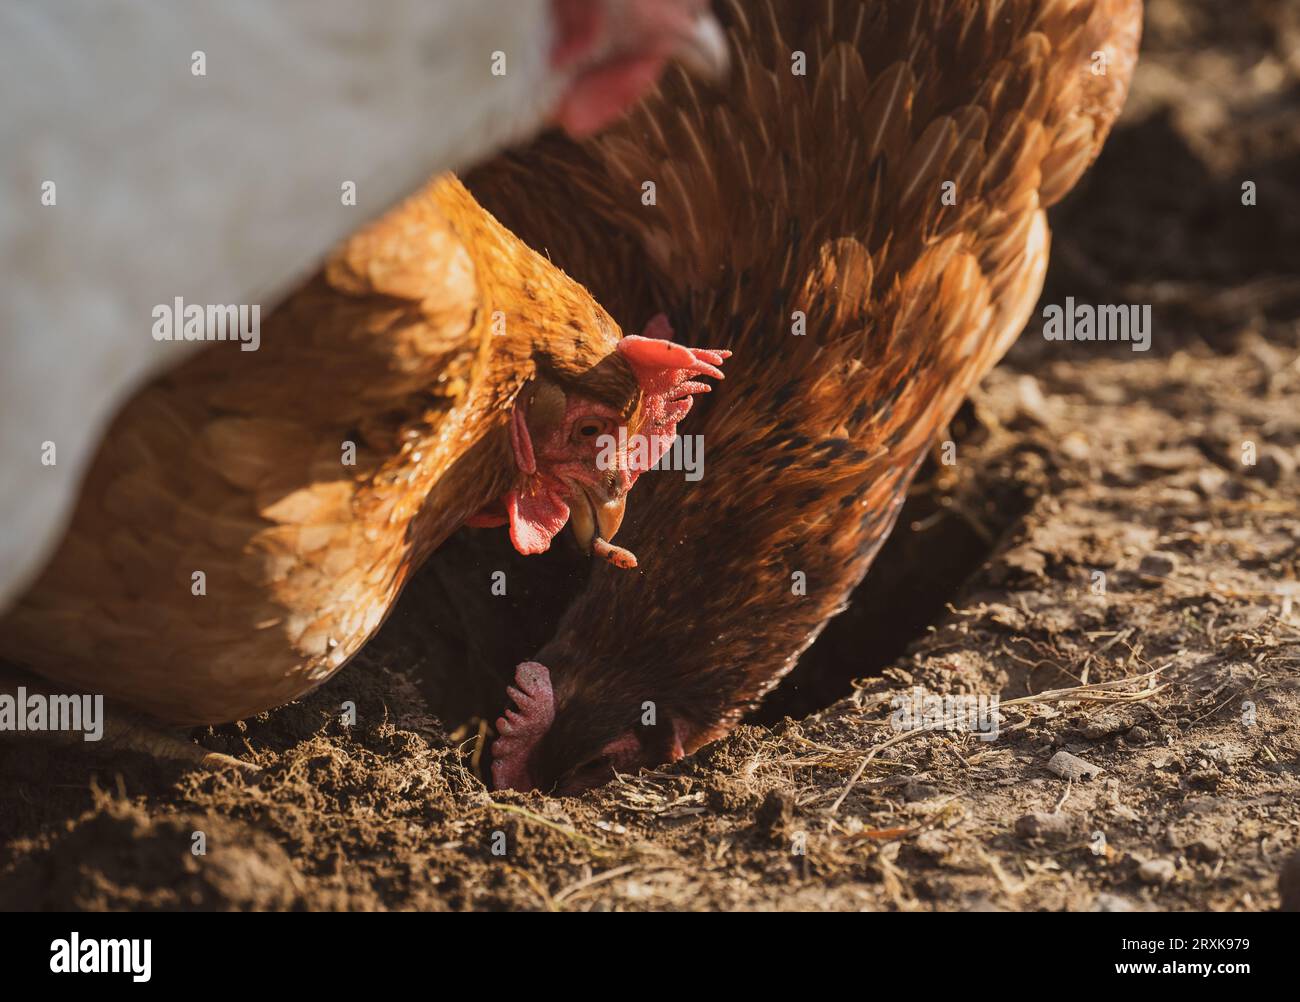 Les poulets de la ferme piquent au sol. Un des poulets tient un ver dans son bec. Ferme biologique. Poules. Banque D'Images